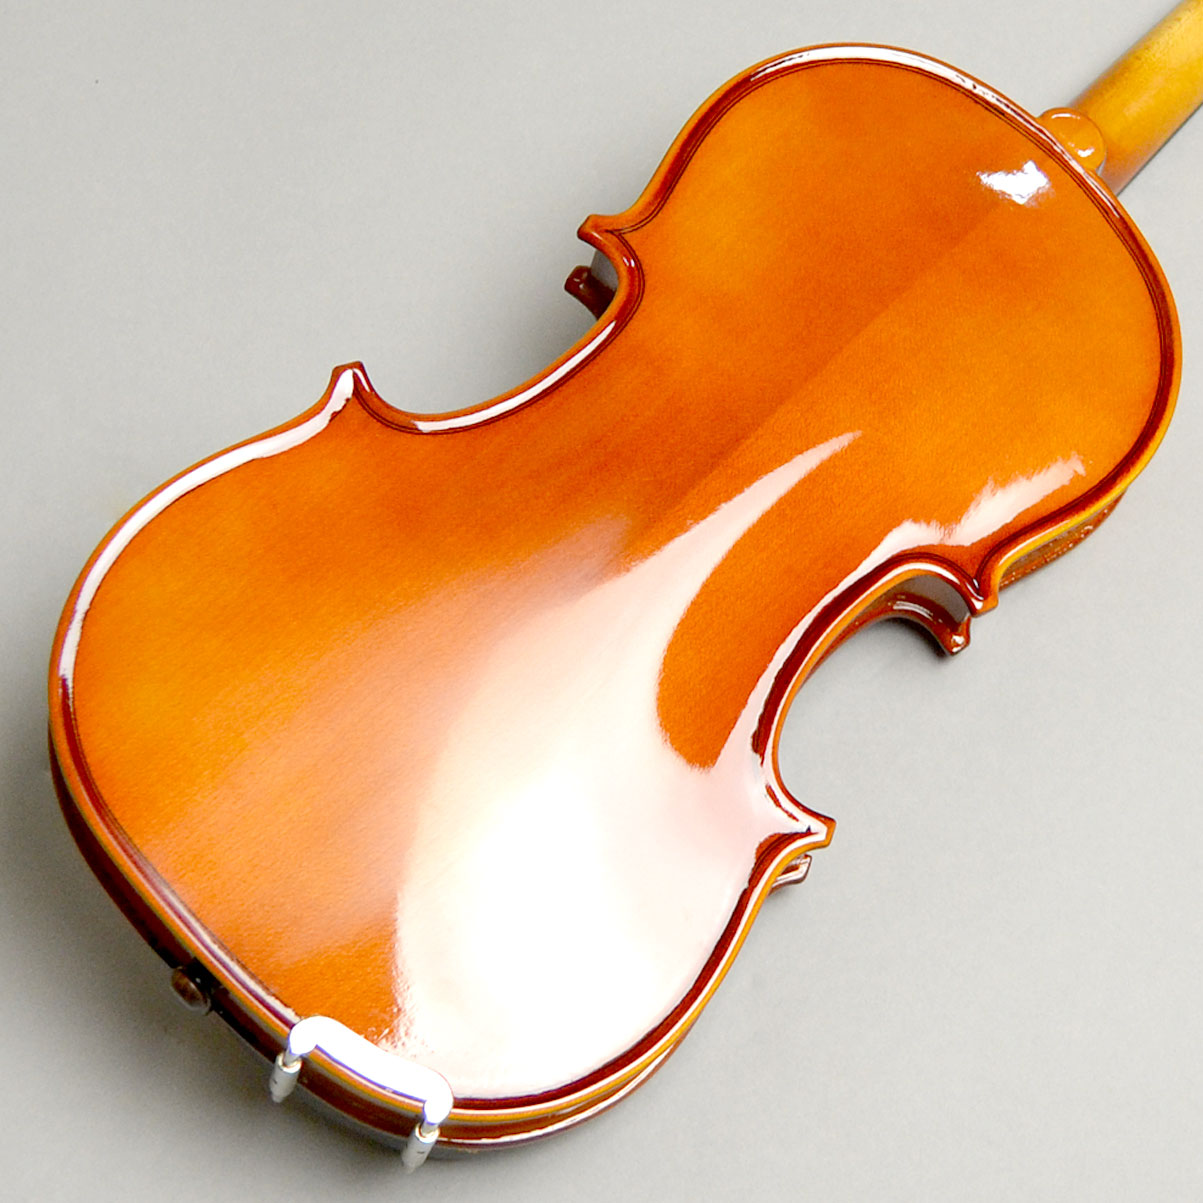 良彩艶出し】 カルロ・ジョルダーノ VS-1500 バイオリン 4/4 セット ...